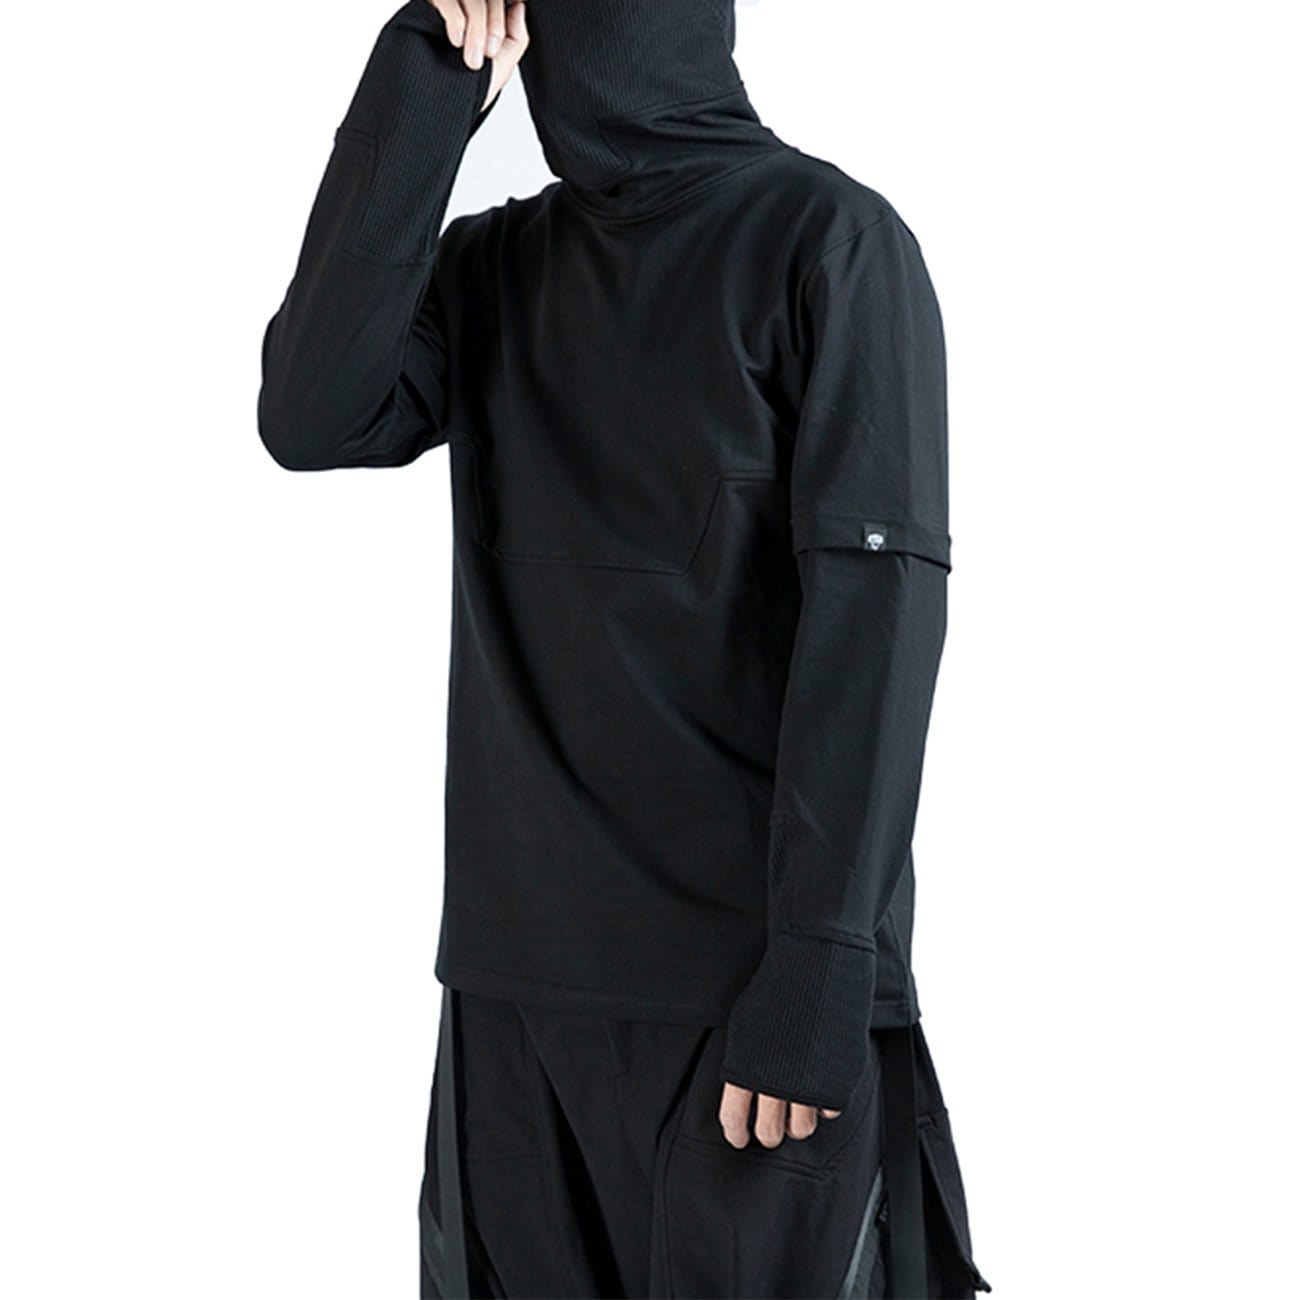 WLS Dark Ninja Turtleneck Sweatshirt